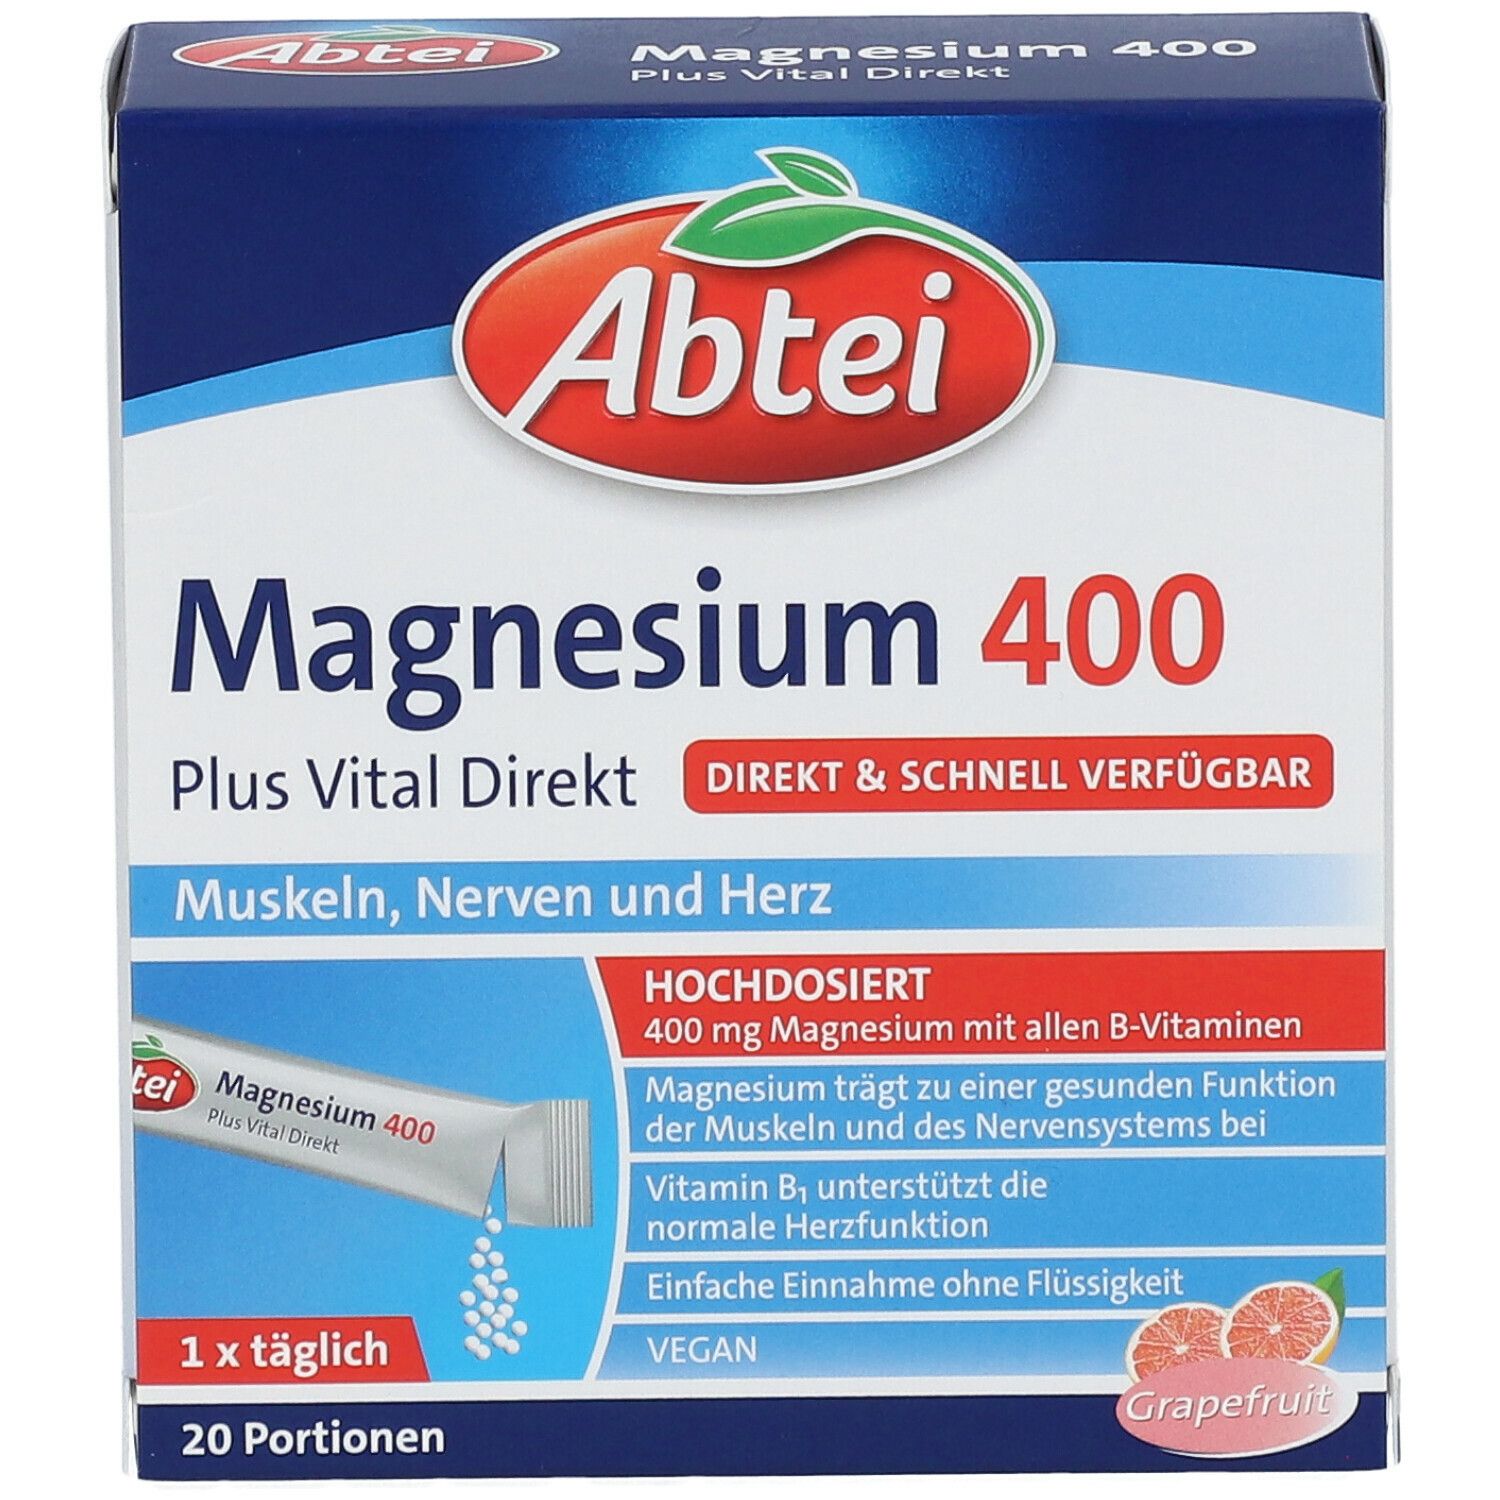 Abtei Magnesium 400 Plus Vital Direkt